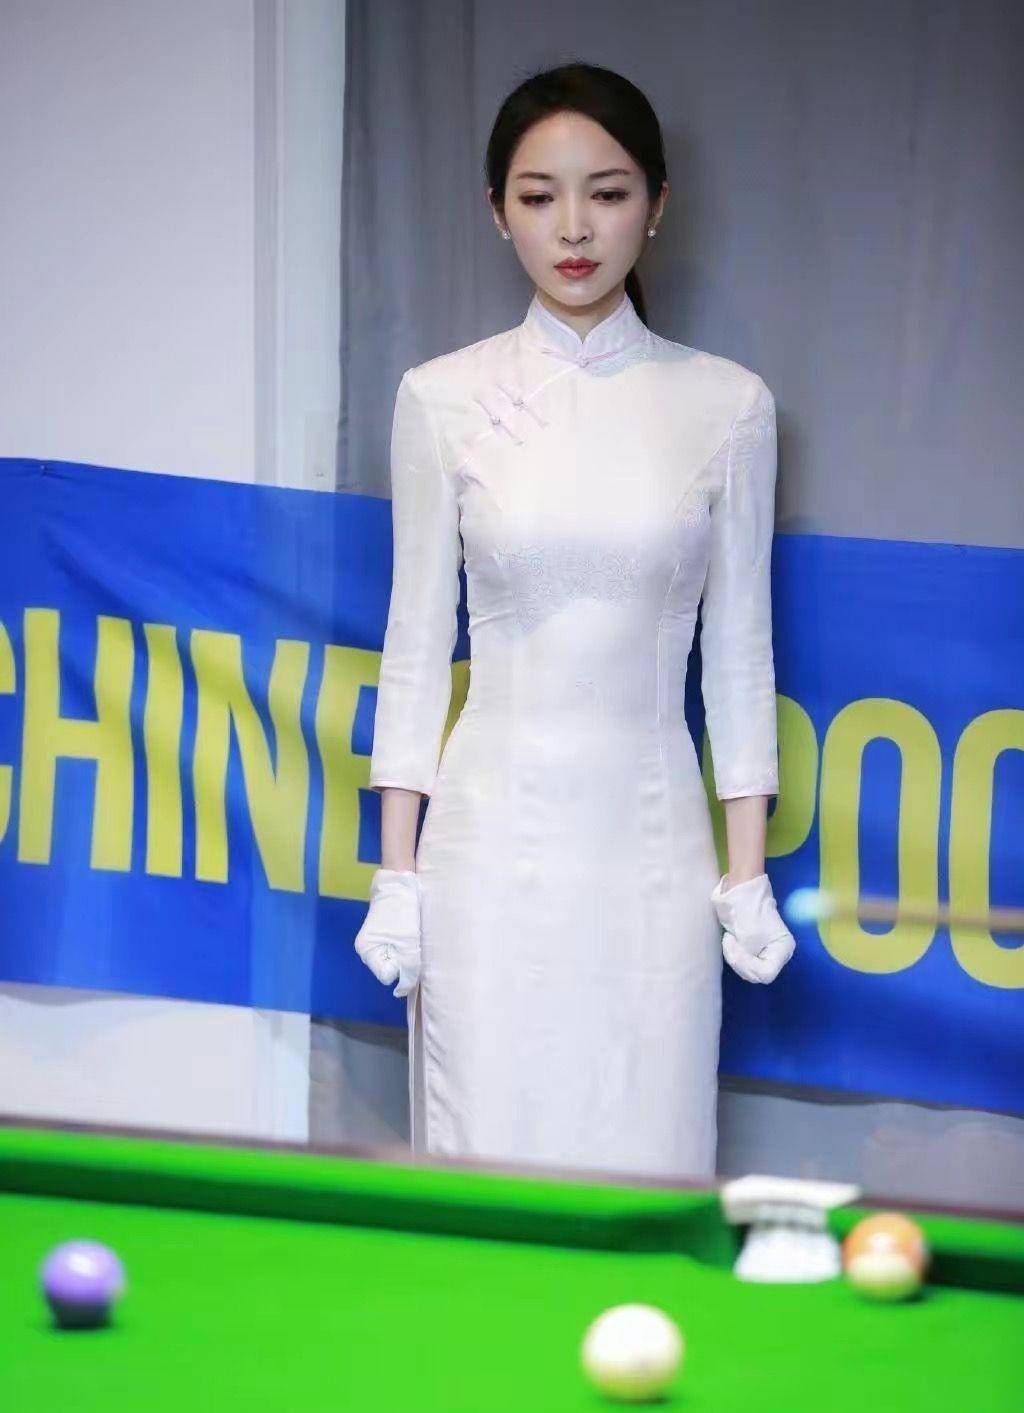 王钟瑶是我见过最美的评委:可爱的旗袍,优雅的打扮,绝美的地段